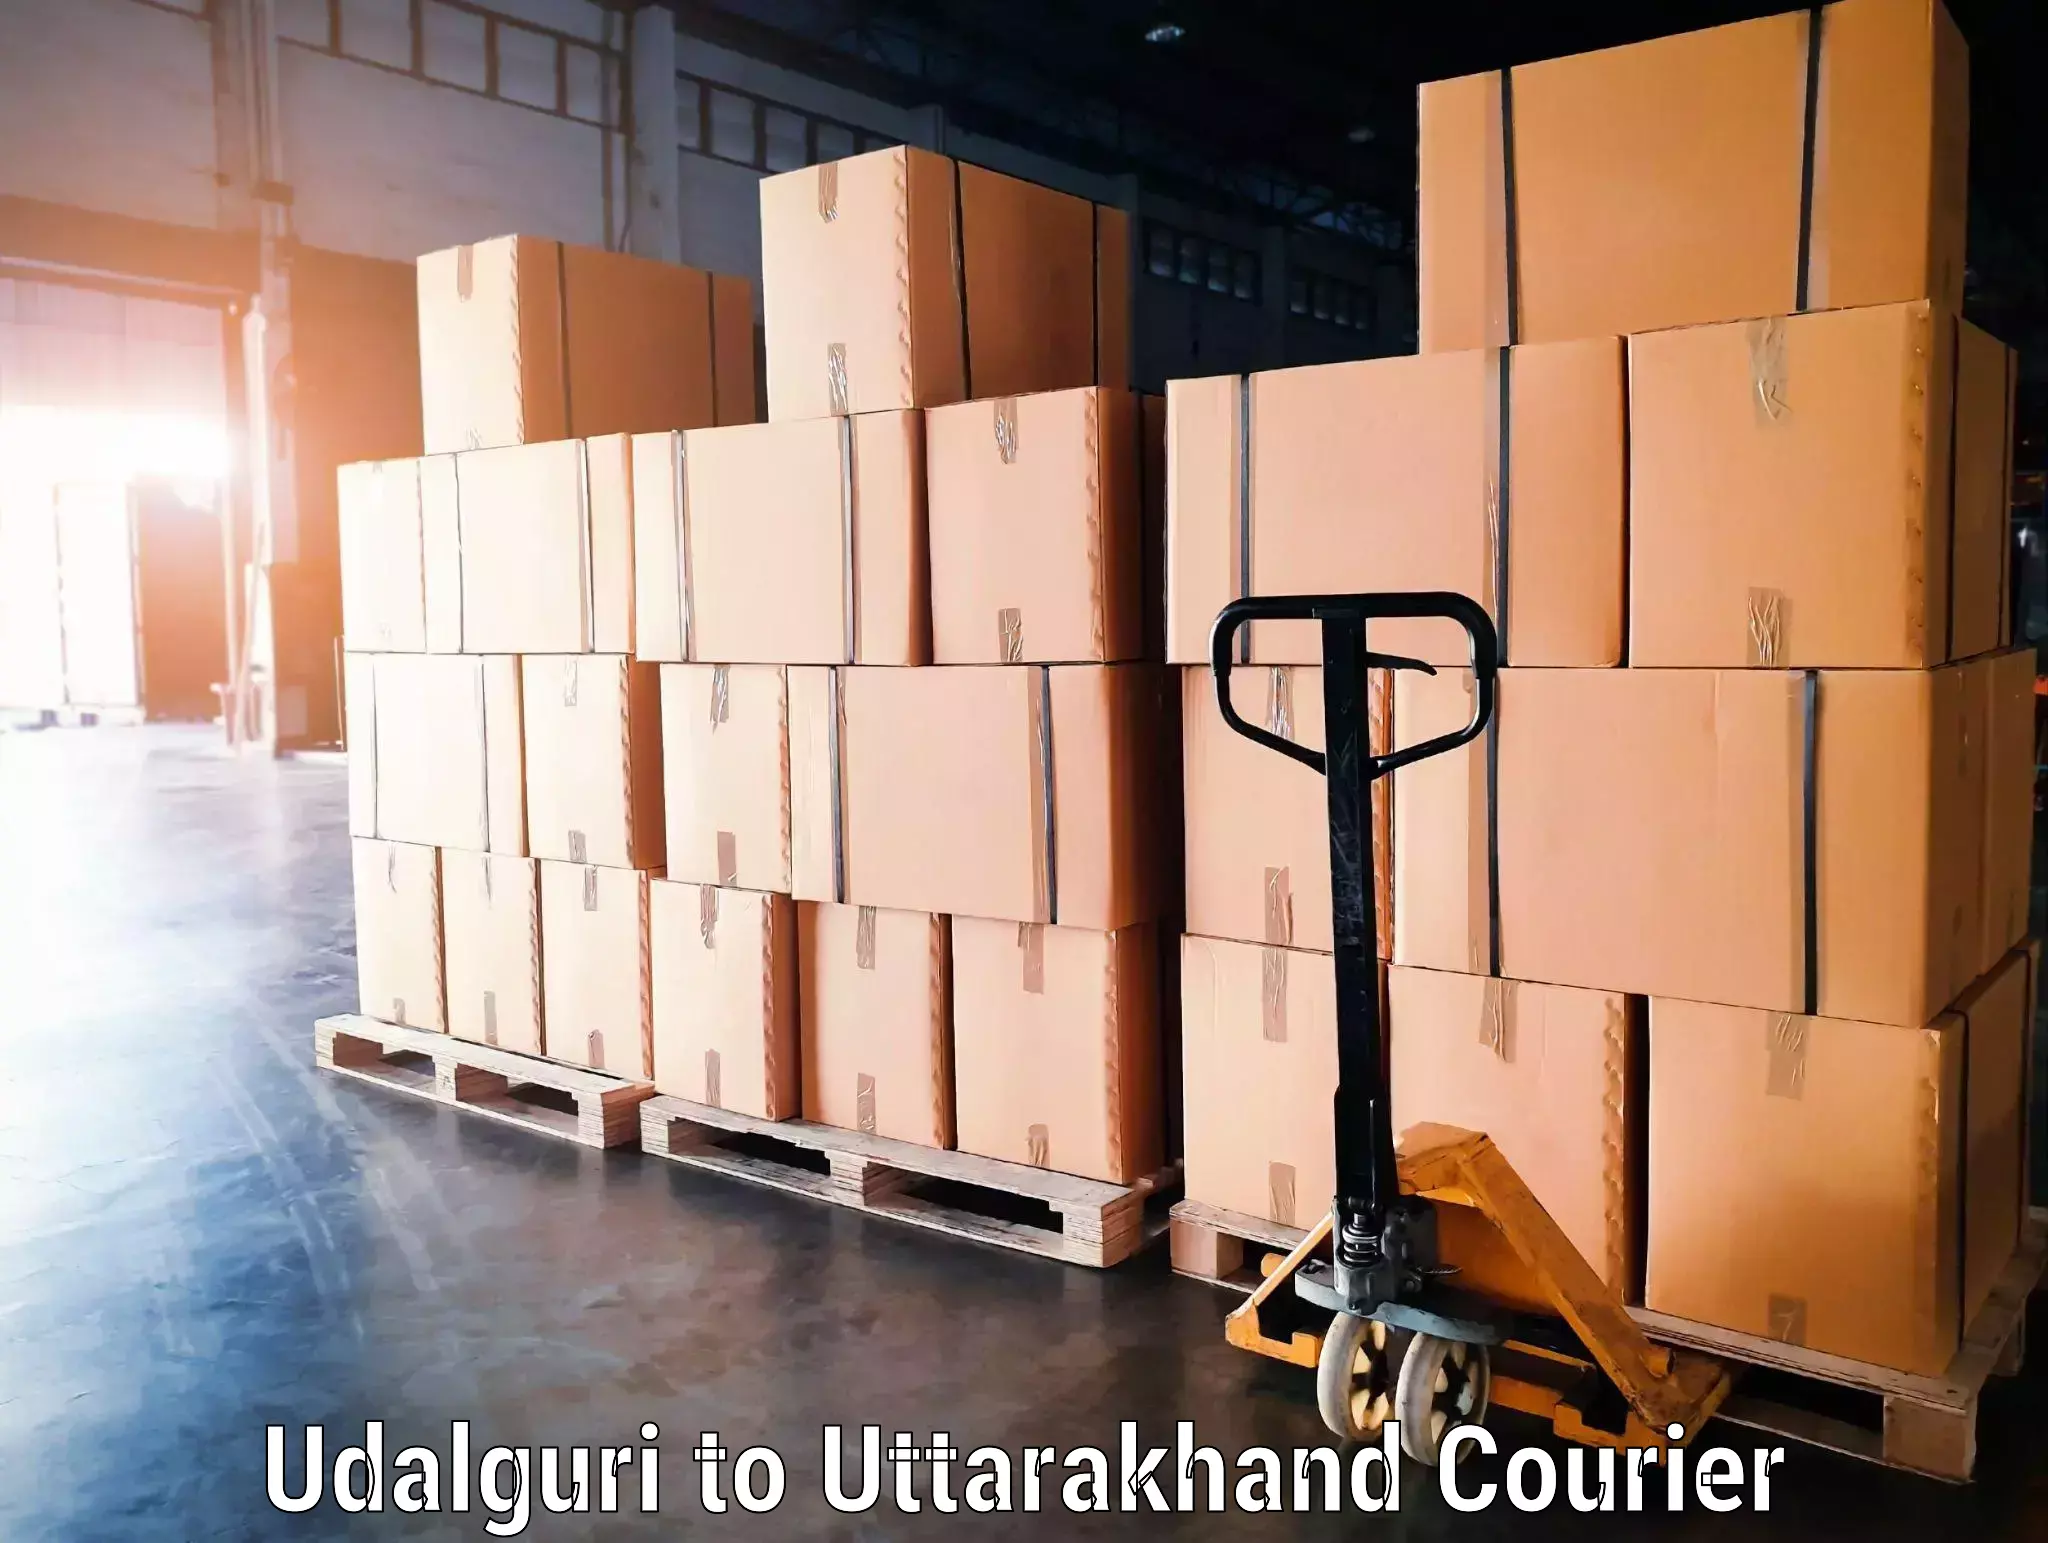 Luggage transport consultancy Udalguri to Uttarakhand